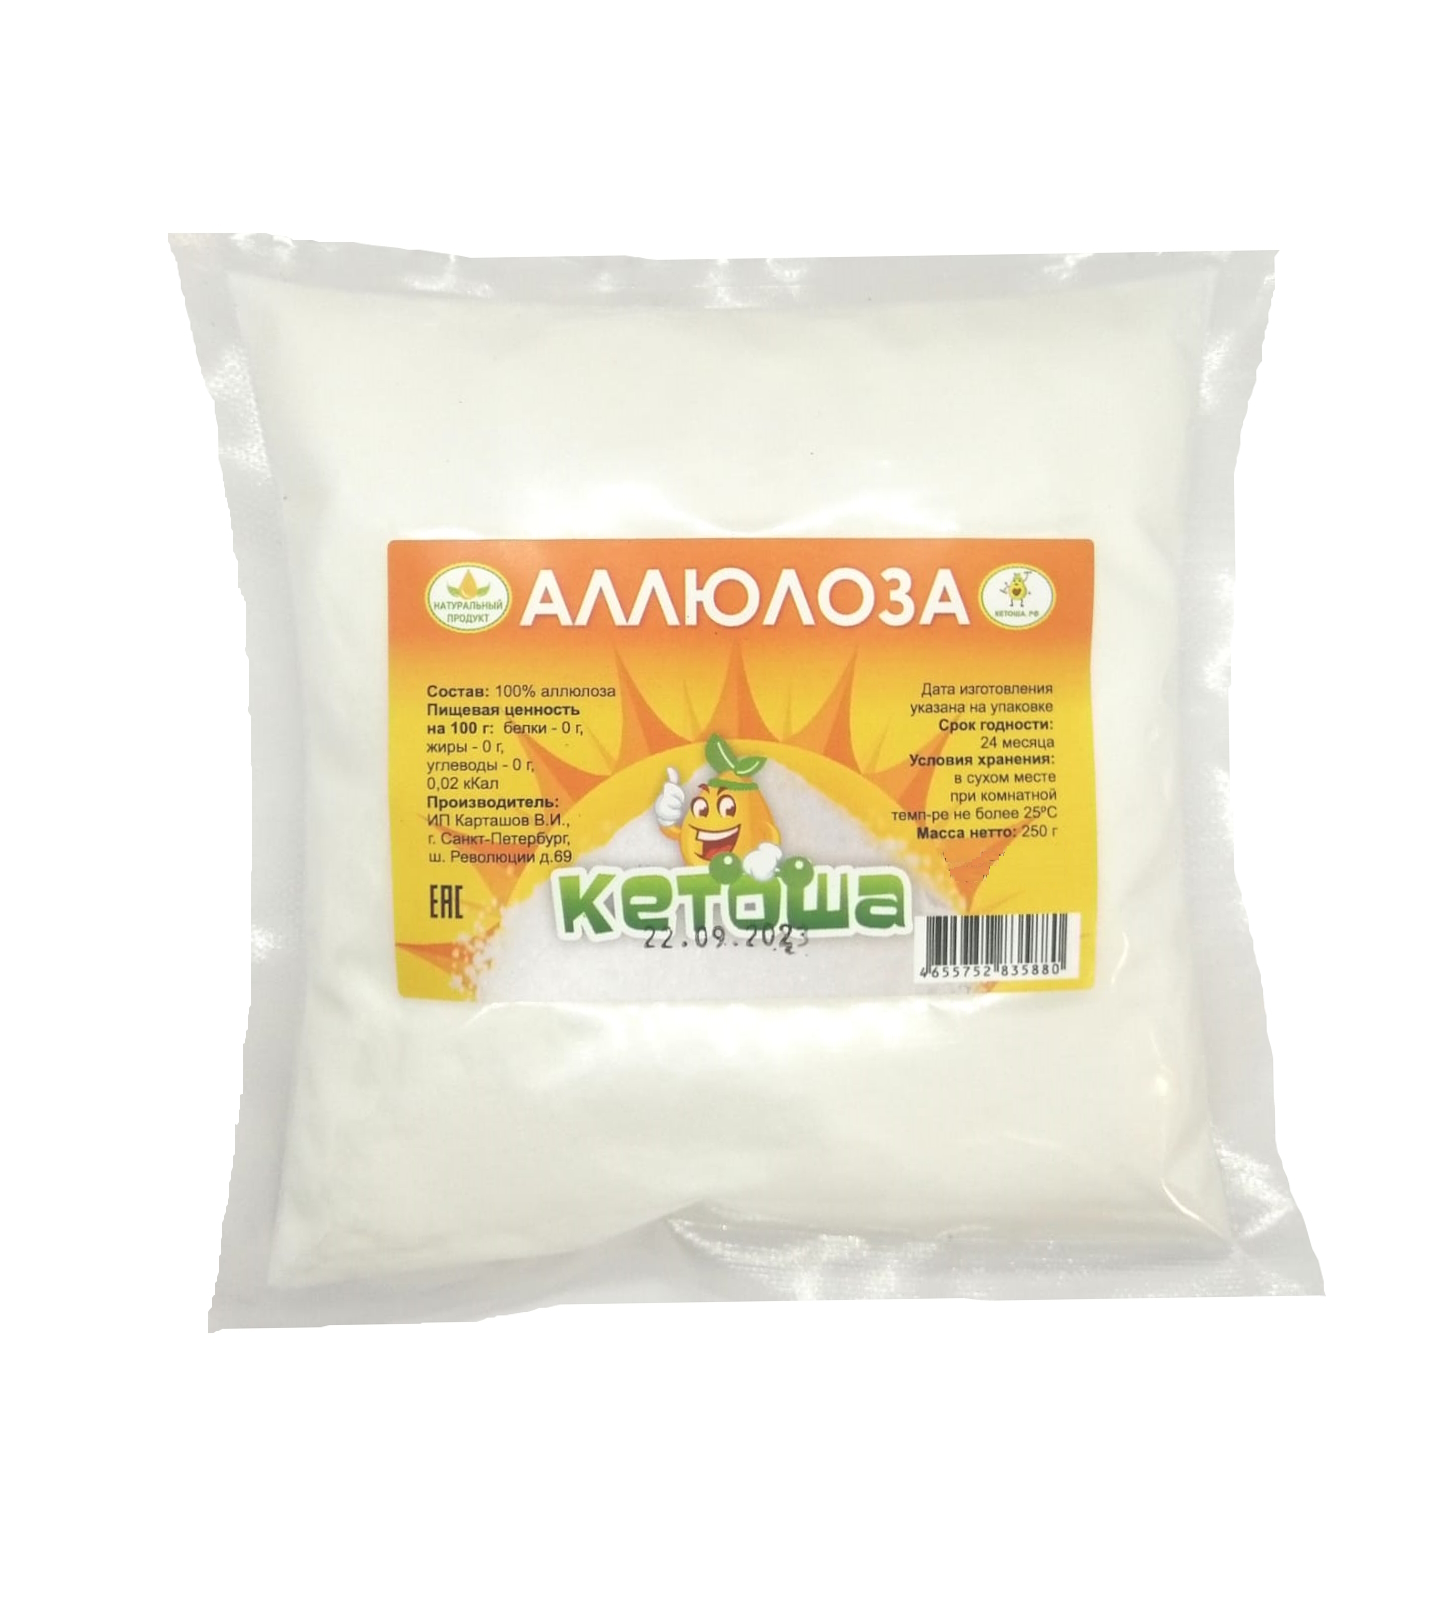 Аллюлоза Кетоша натуральный заменитель сахара, 250 г